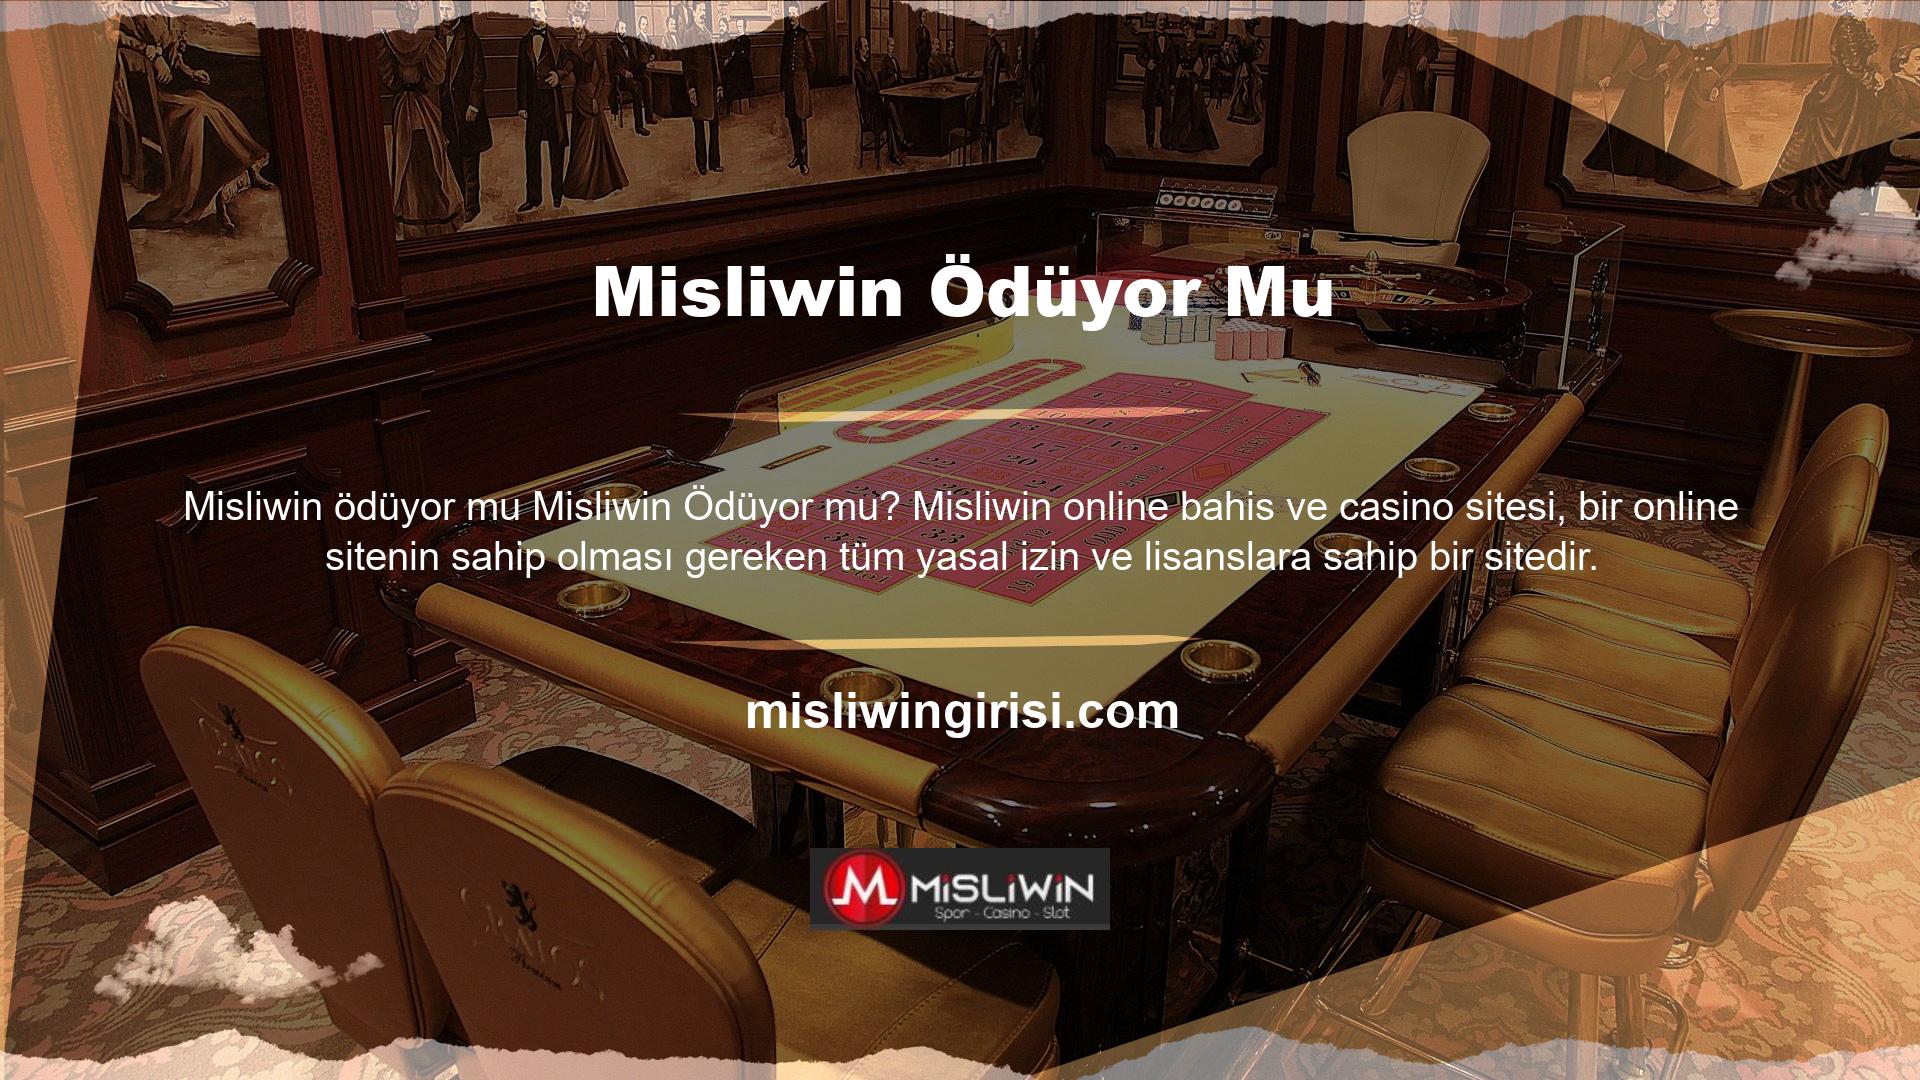 Site bu anlamda spor bahisleri ve casino oyunları başta olmak üzere farklı sektörlerden kullanıcılara hizmet vermektedir